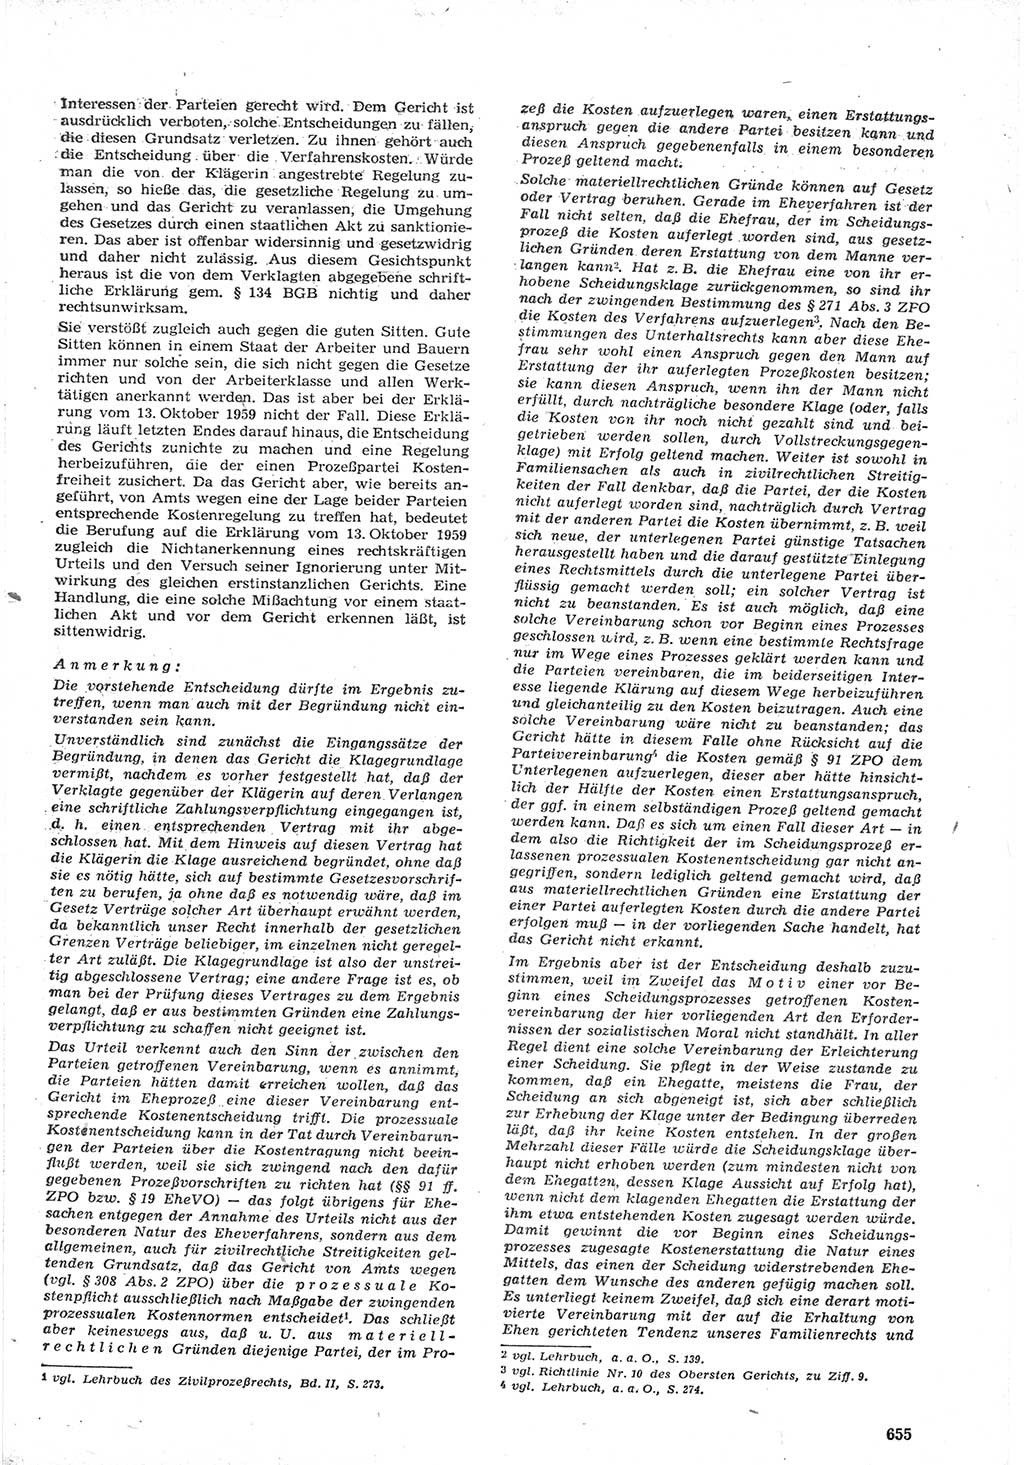 Neue Justiz (NJ), Zeitschrift für Recht und Rechtswissenschaft [Deutsche Demokratische Republik (DDR)], 15. Jahrgang 1961, Seite 655 (NJ DDR 1961, S. 655)